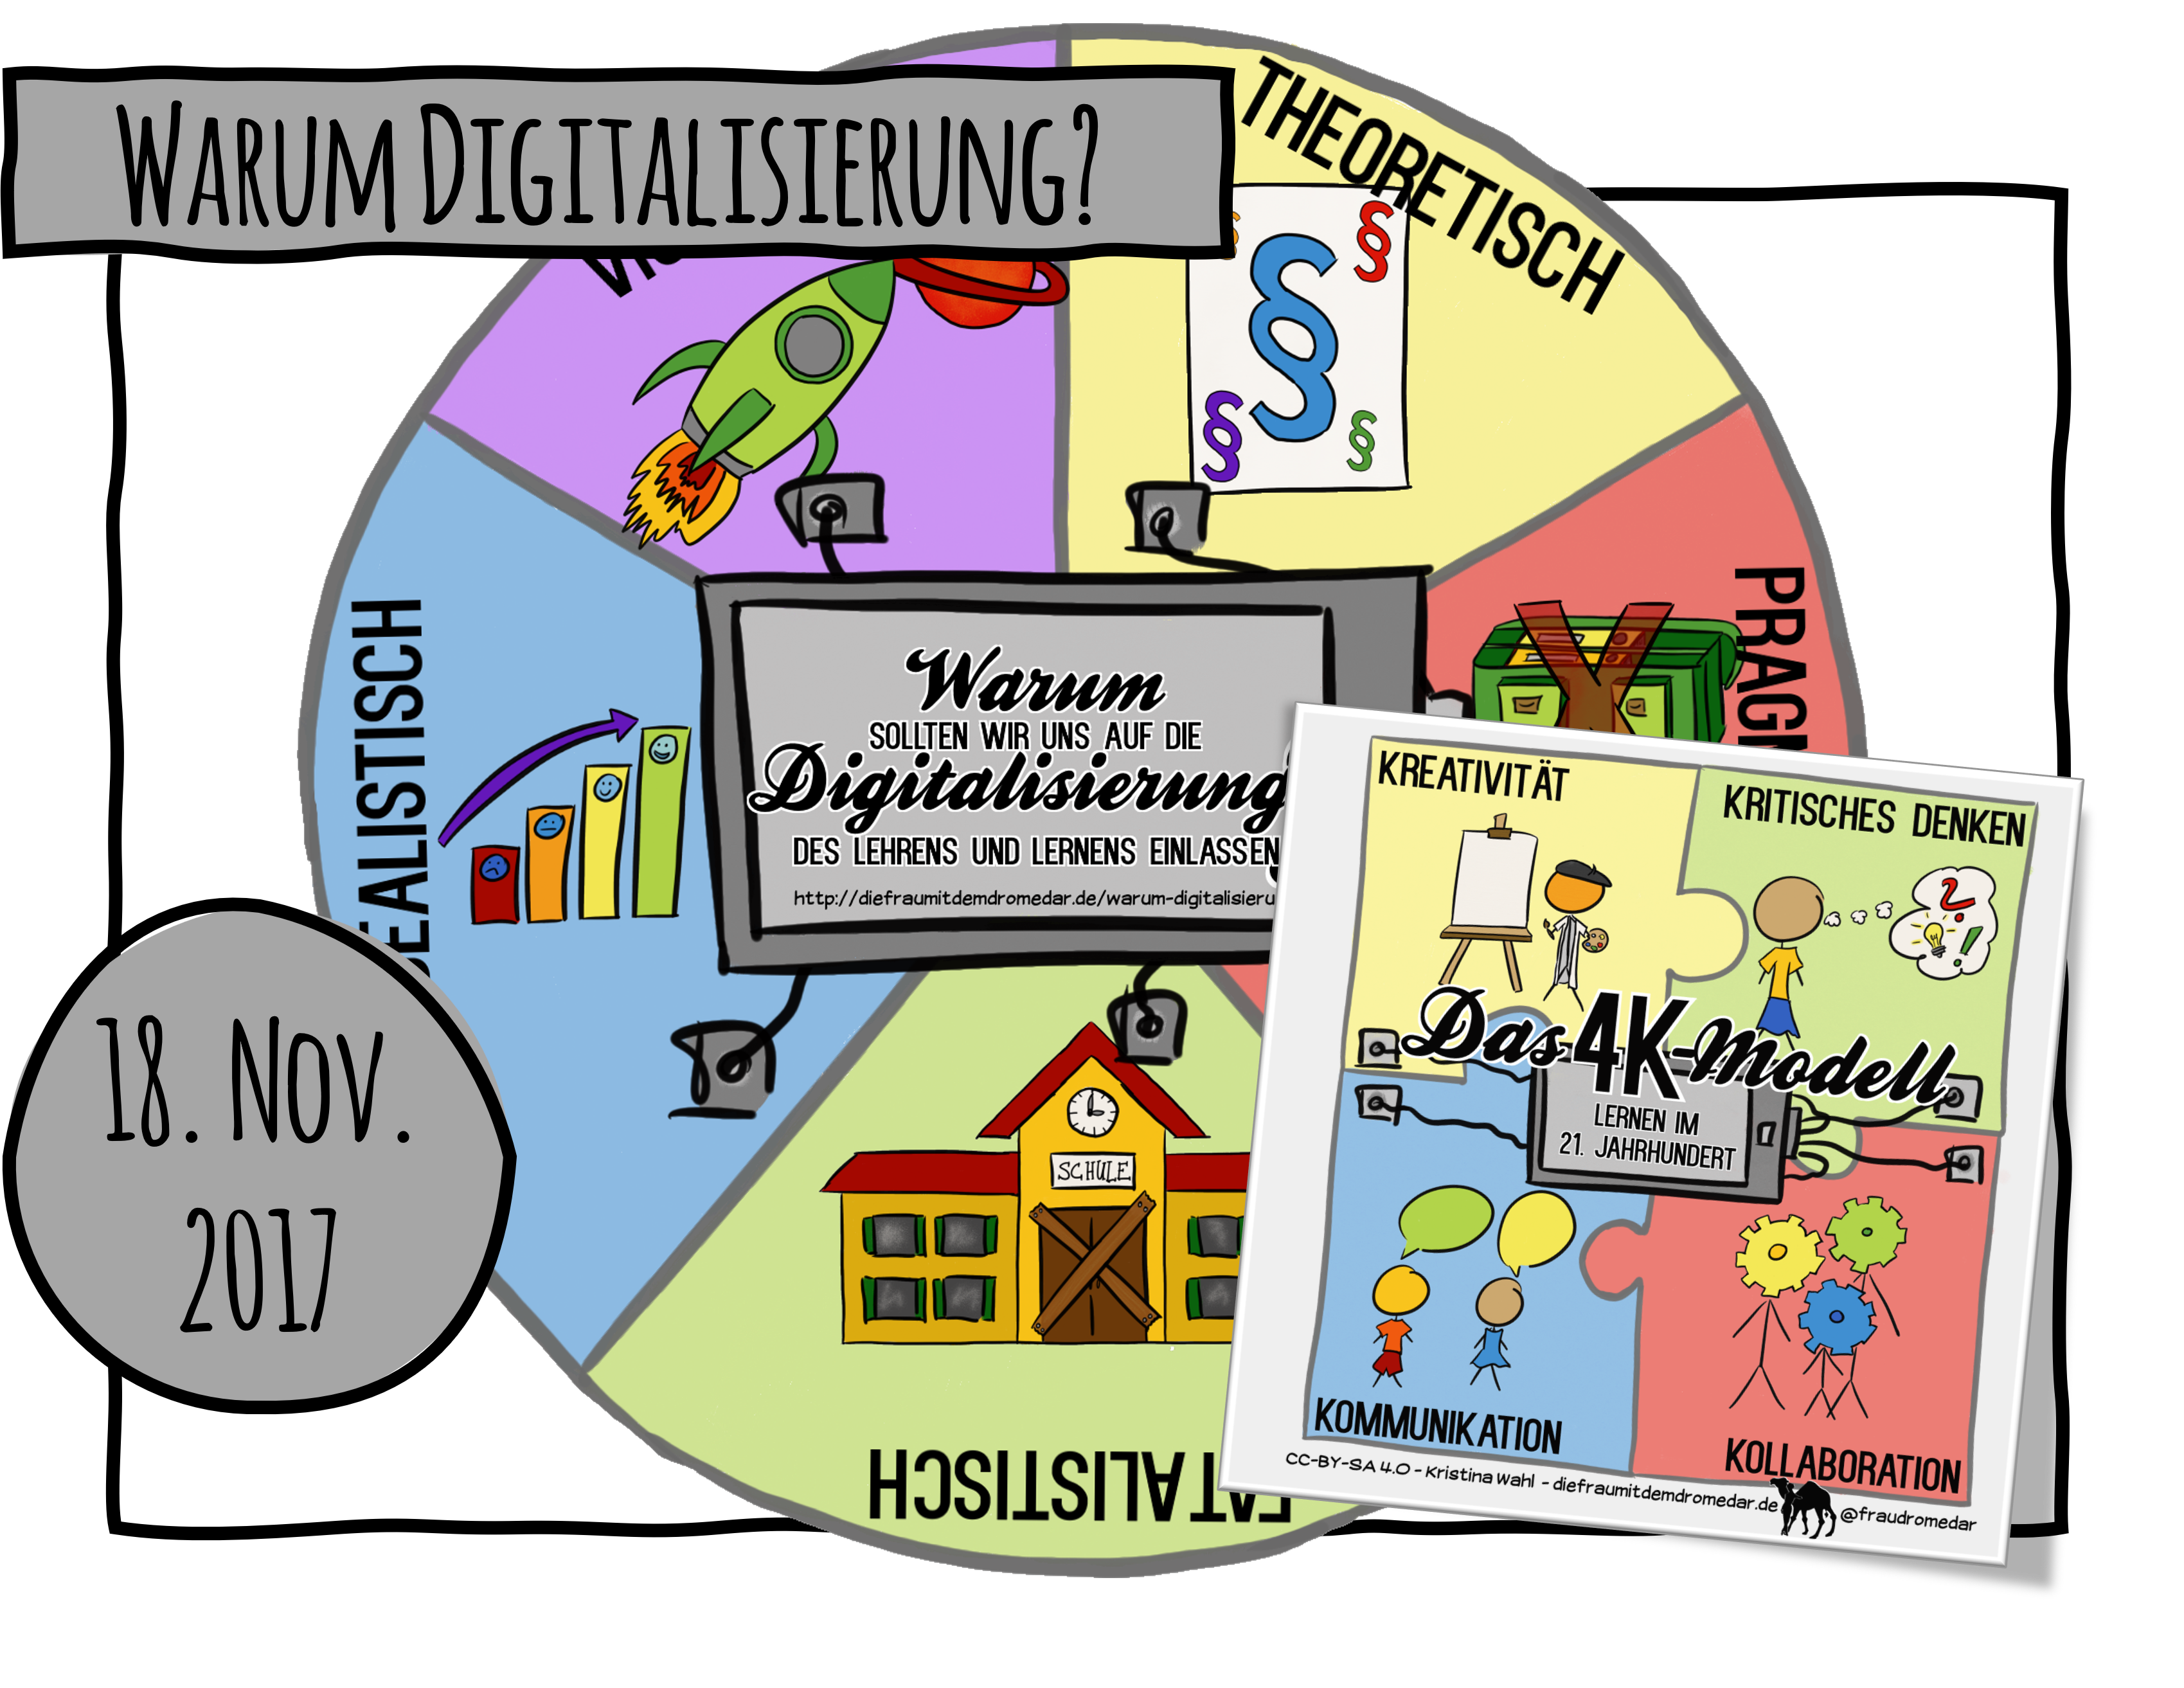 Warum sollten wir uns auf die Digitalisierung des Lehrens und Lernens einlassen?